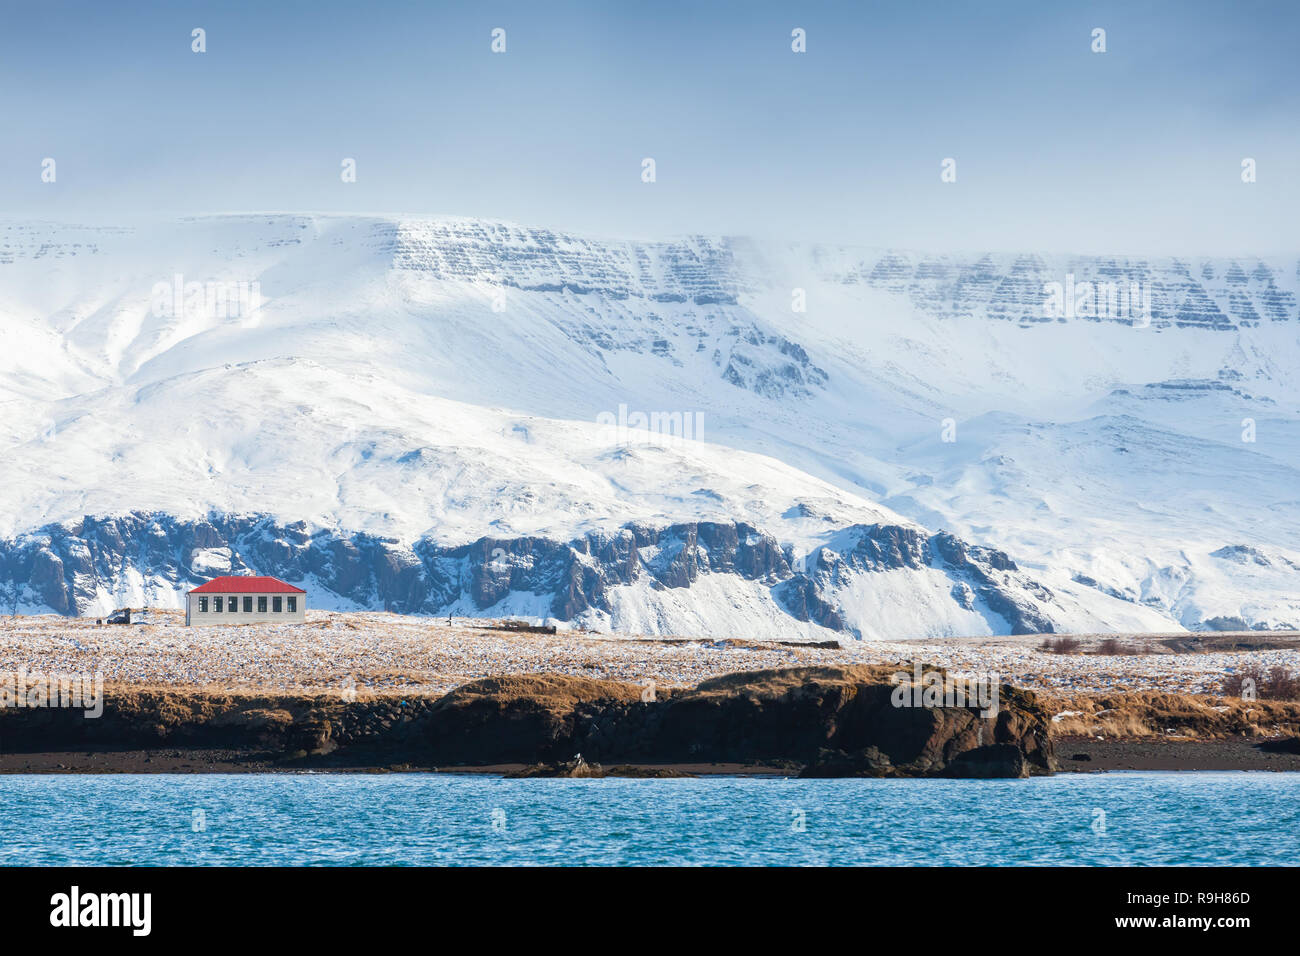 Paysage islandais côtières avec les montagnes enneigées et maison solitaire. Reykjavik, Islande Banque D'Images